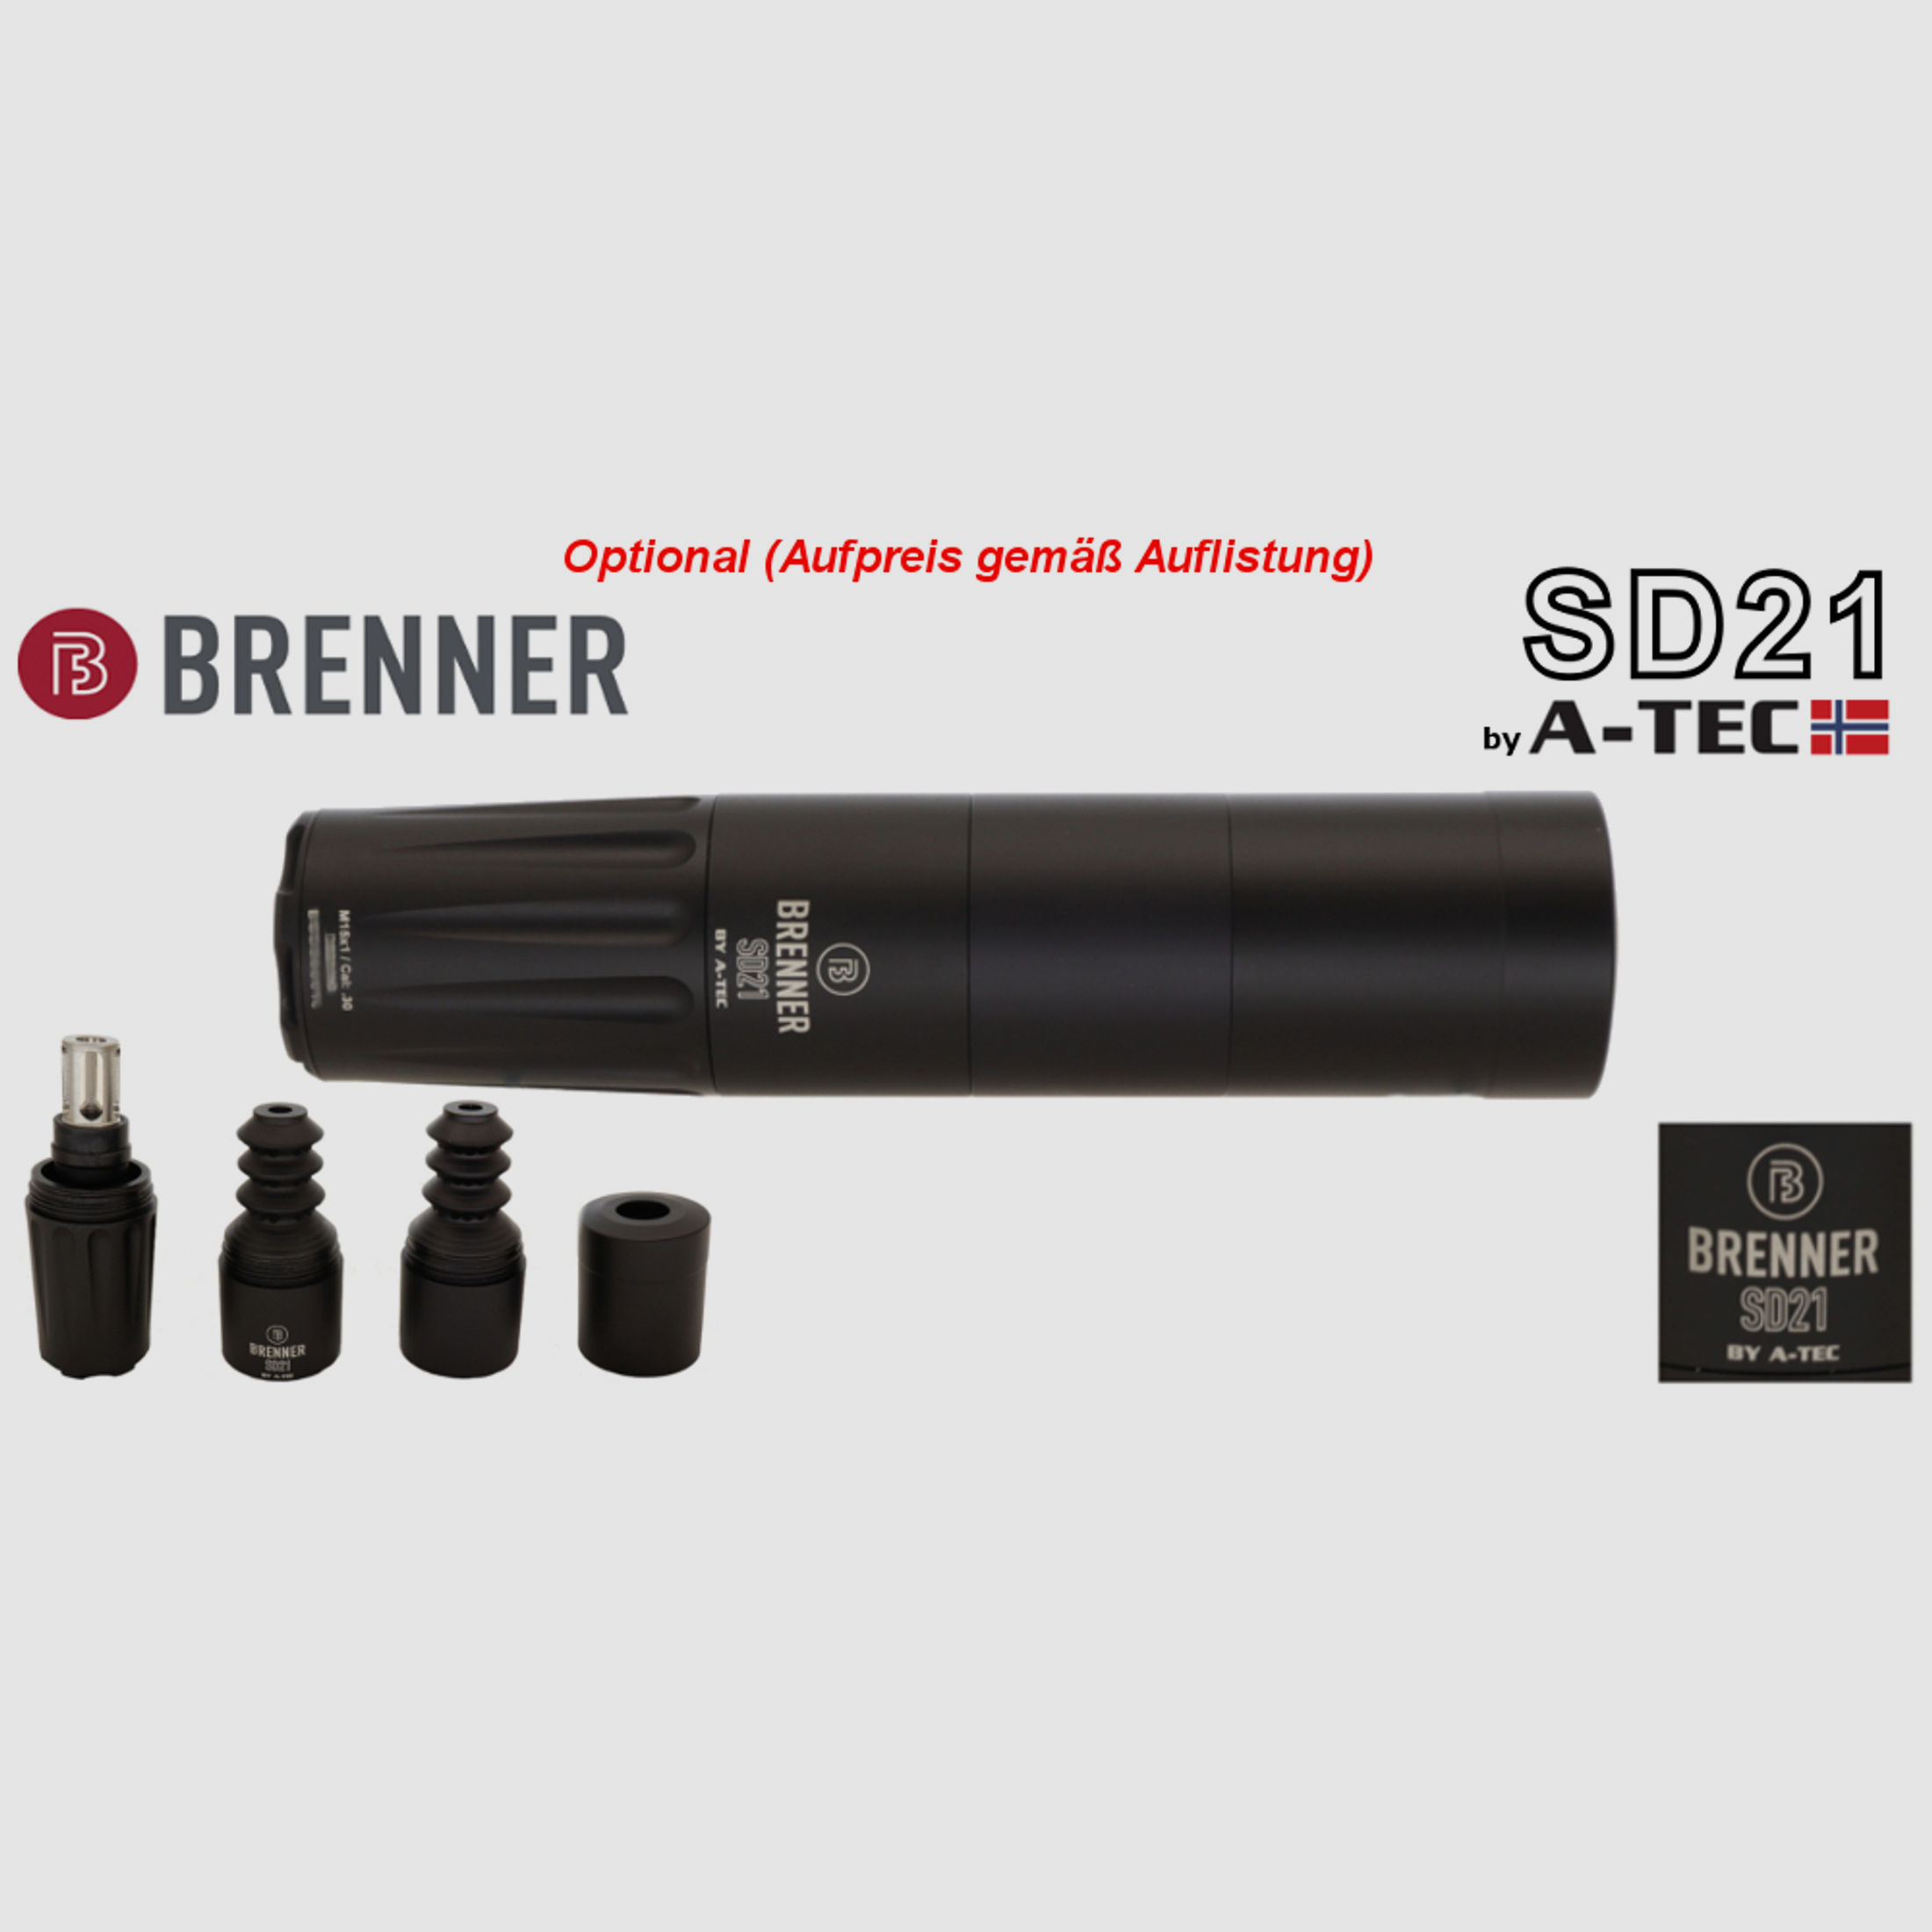 Komplettpaket: Brenner BR20 B&H Prohunter Flex Lochschaft mit doppelter Verstellung inkl. Leica 2.5-15x56 (Art.Nr.: BR20PHFP3) Finanzierung möglich